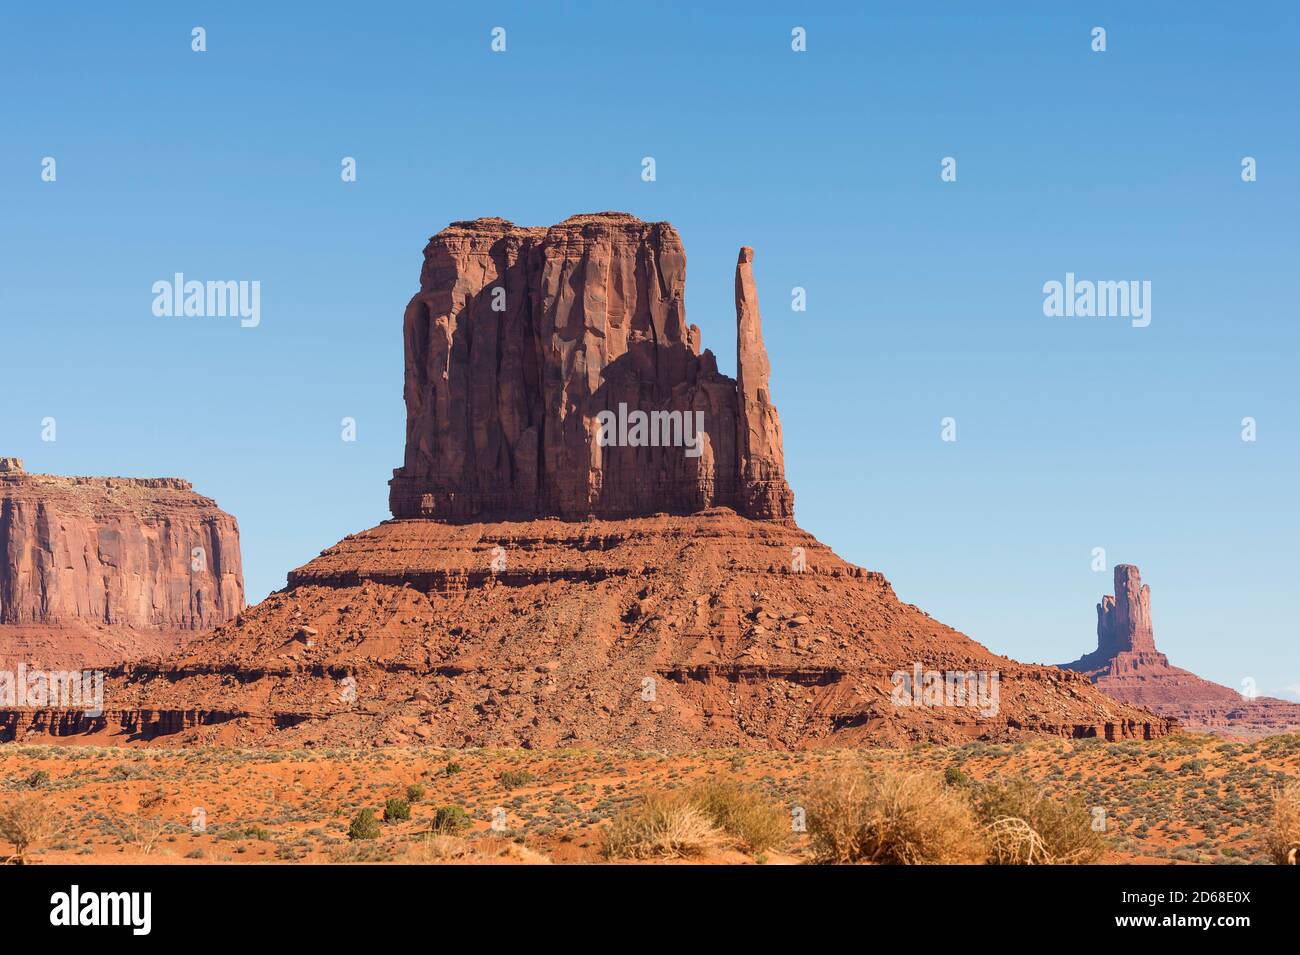 USA: Le famose formazioni rocciose nella Monument Valley, Arizona, paesaggio tipico del grande West americano Foto Stock